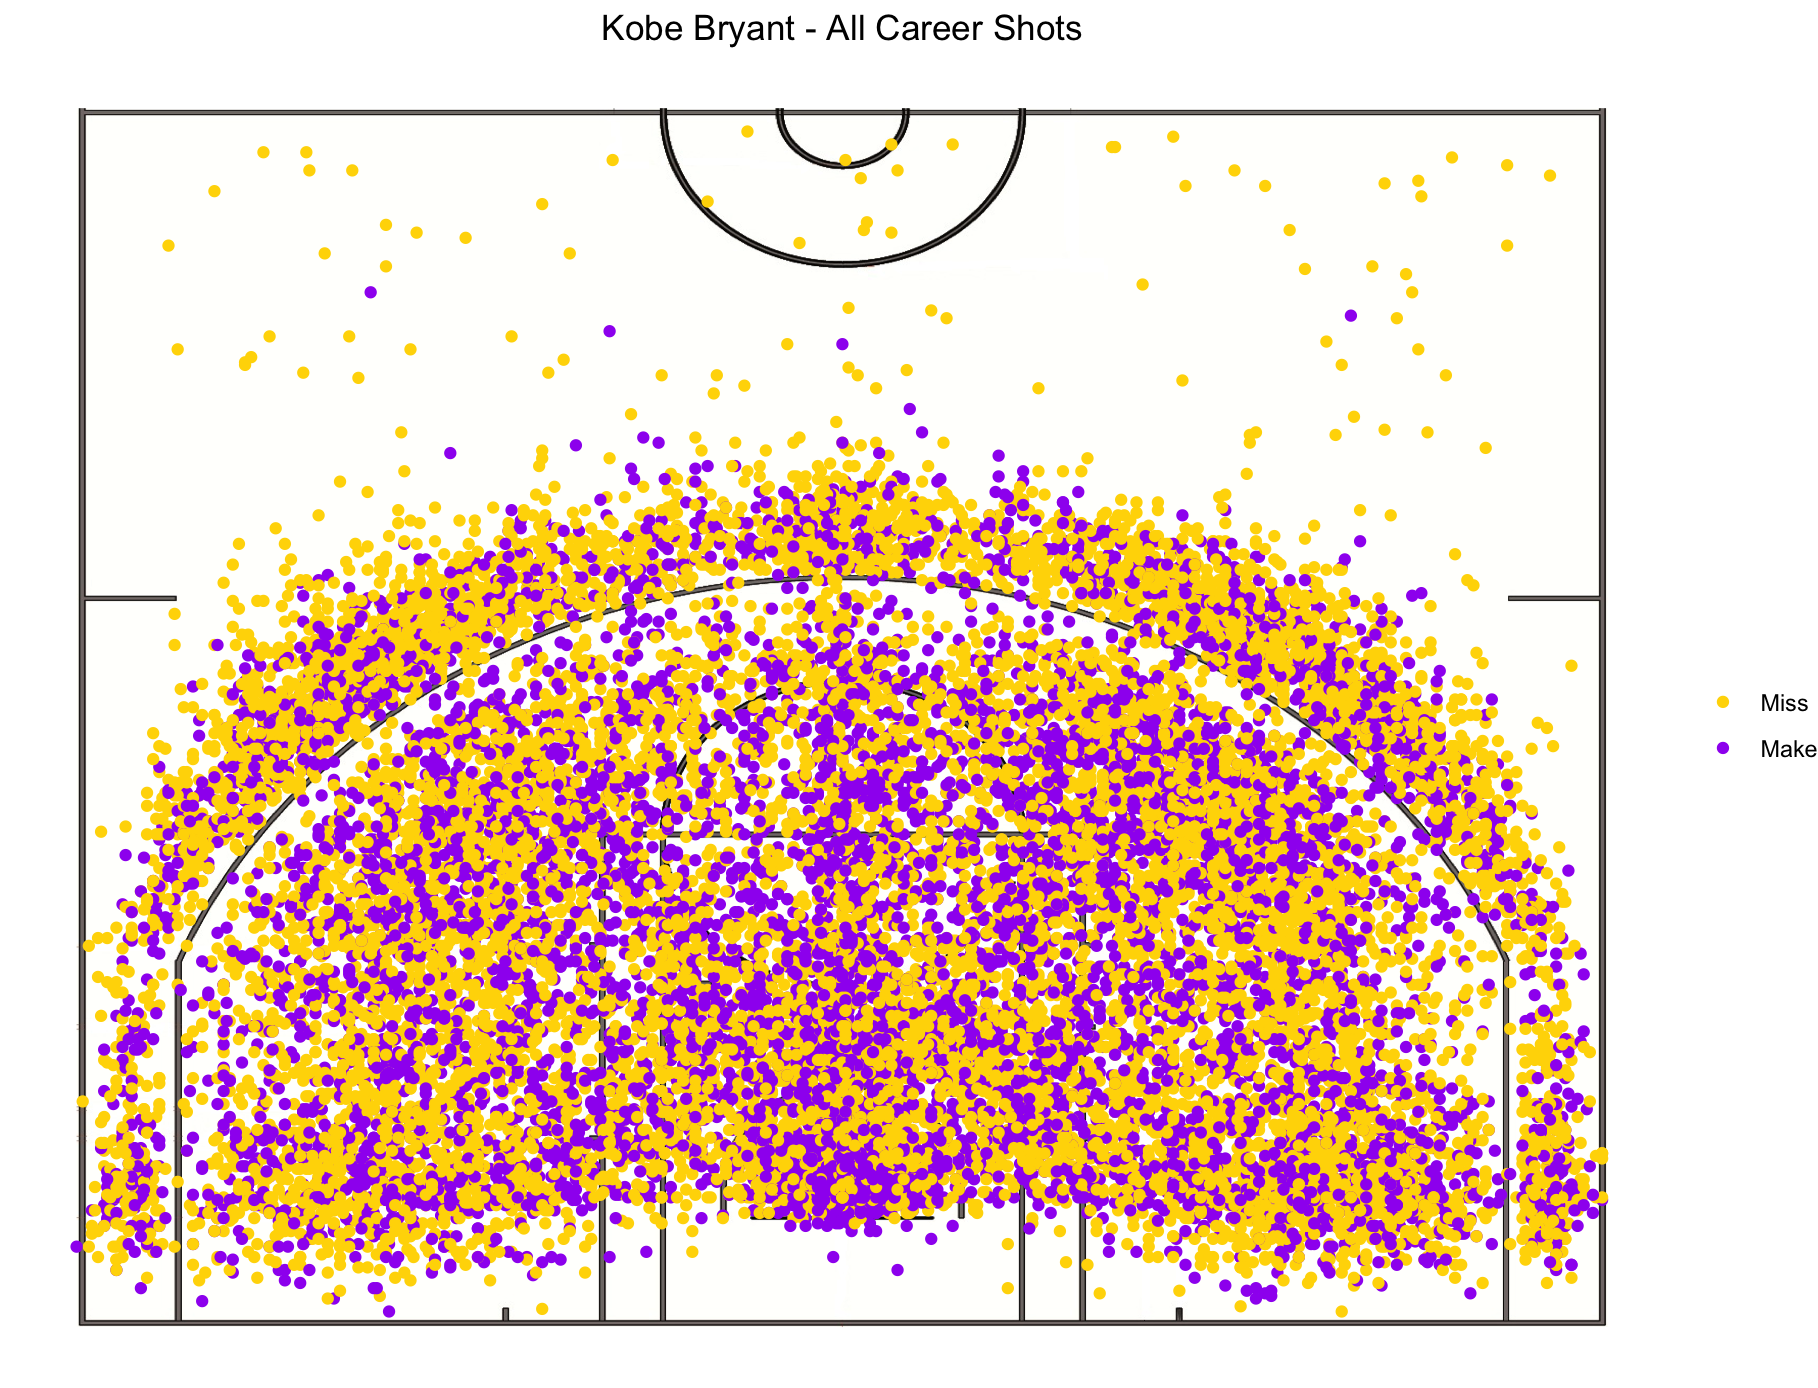 The Legendary Career of Kobe Bryant Visualized in Data